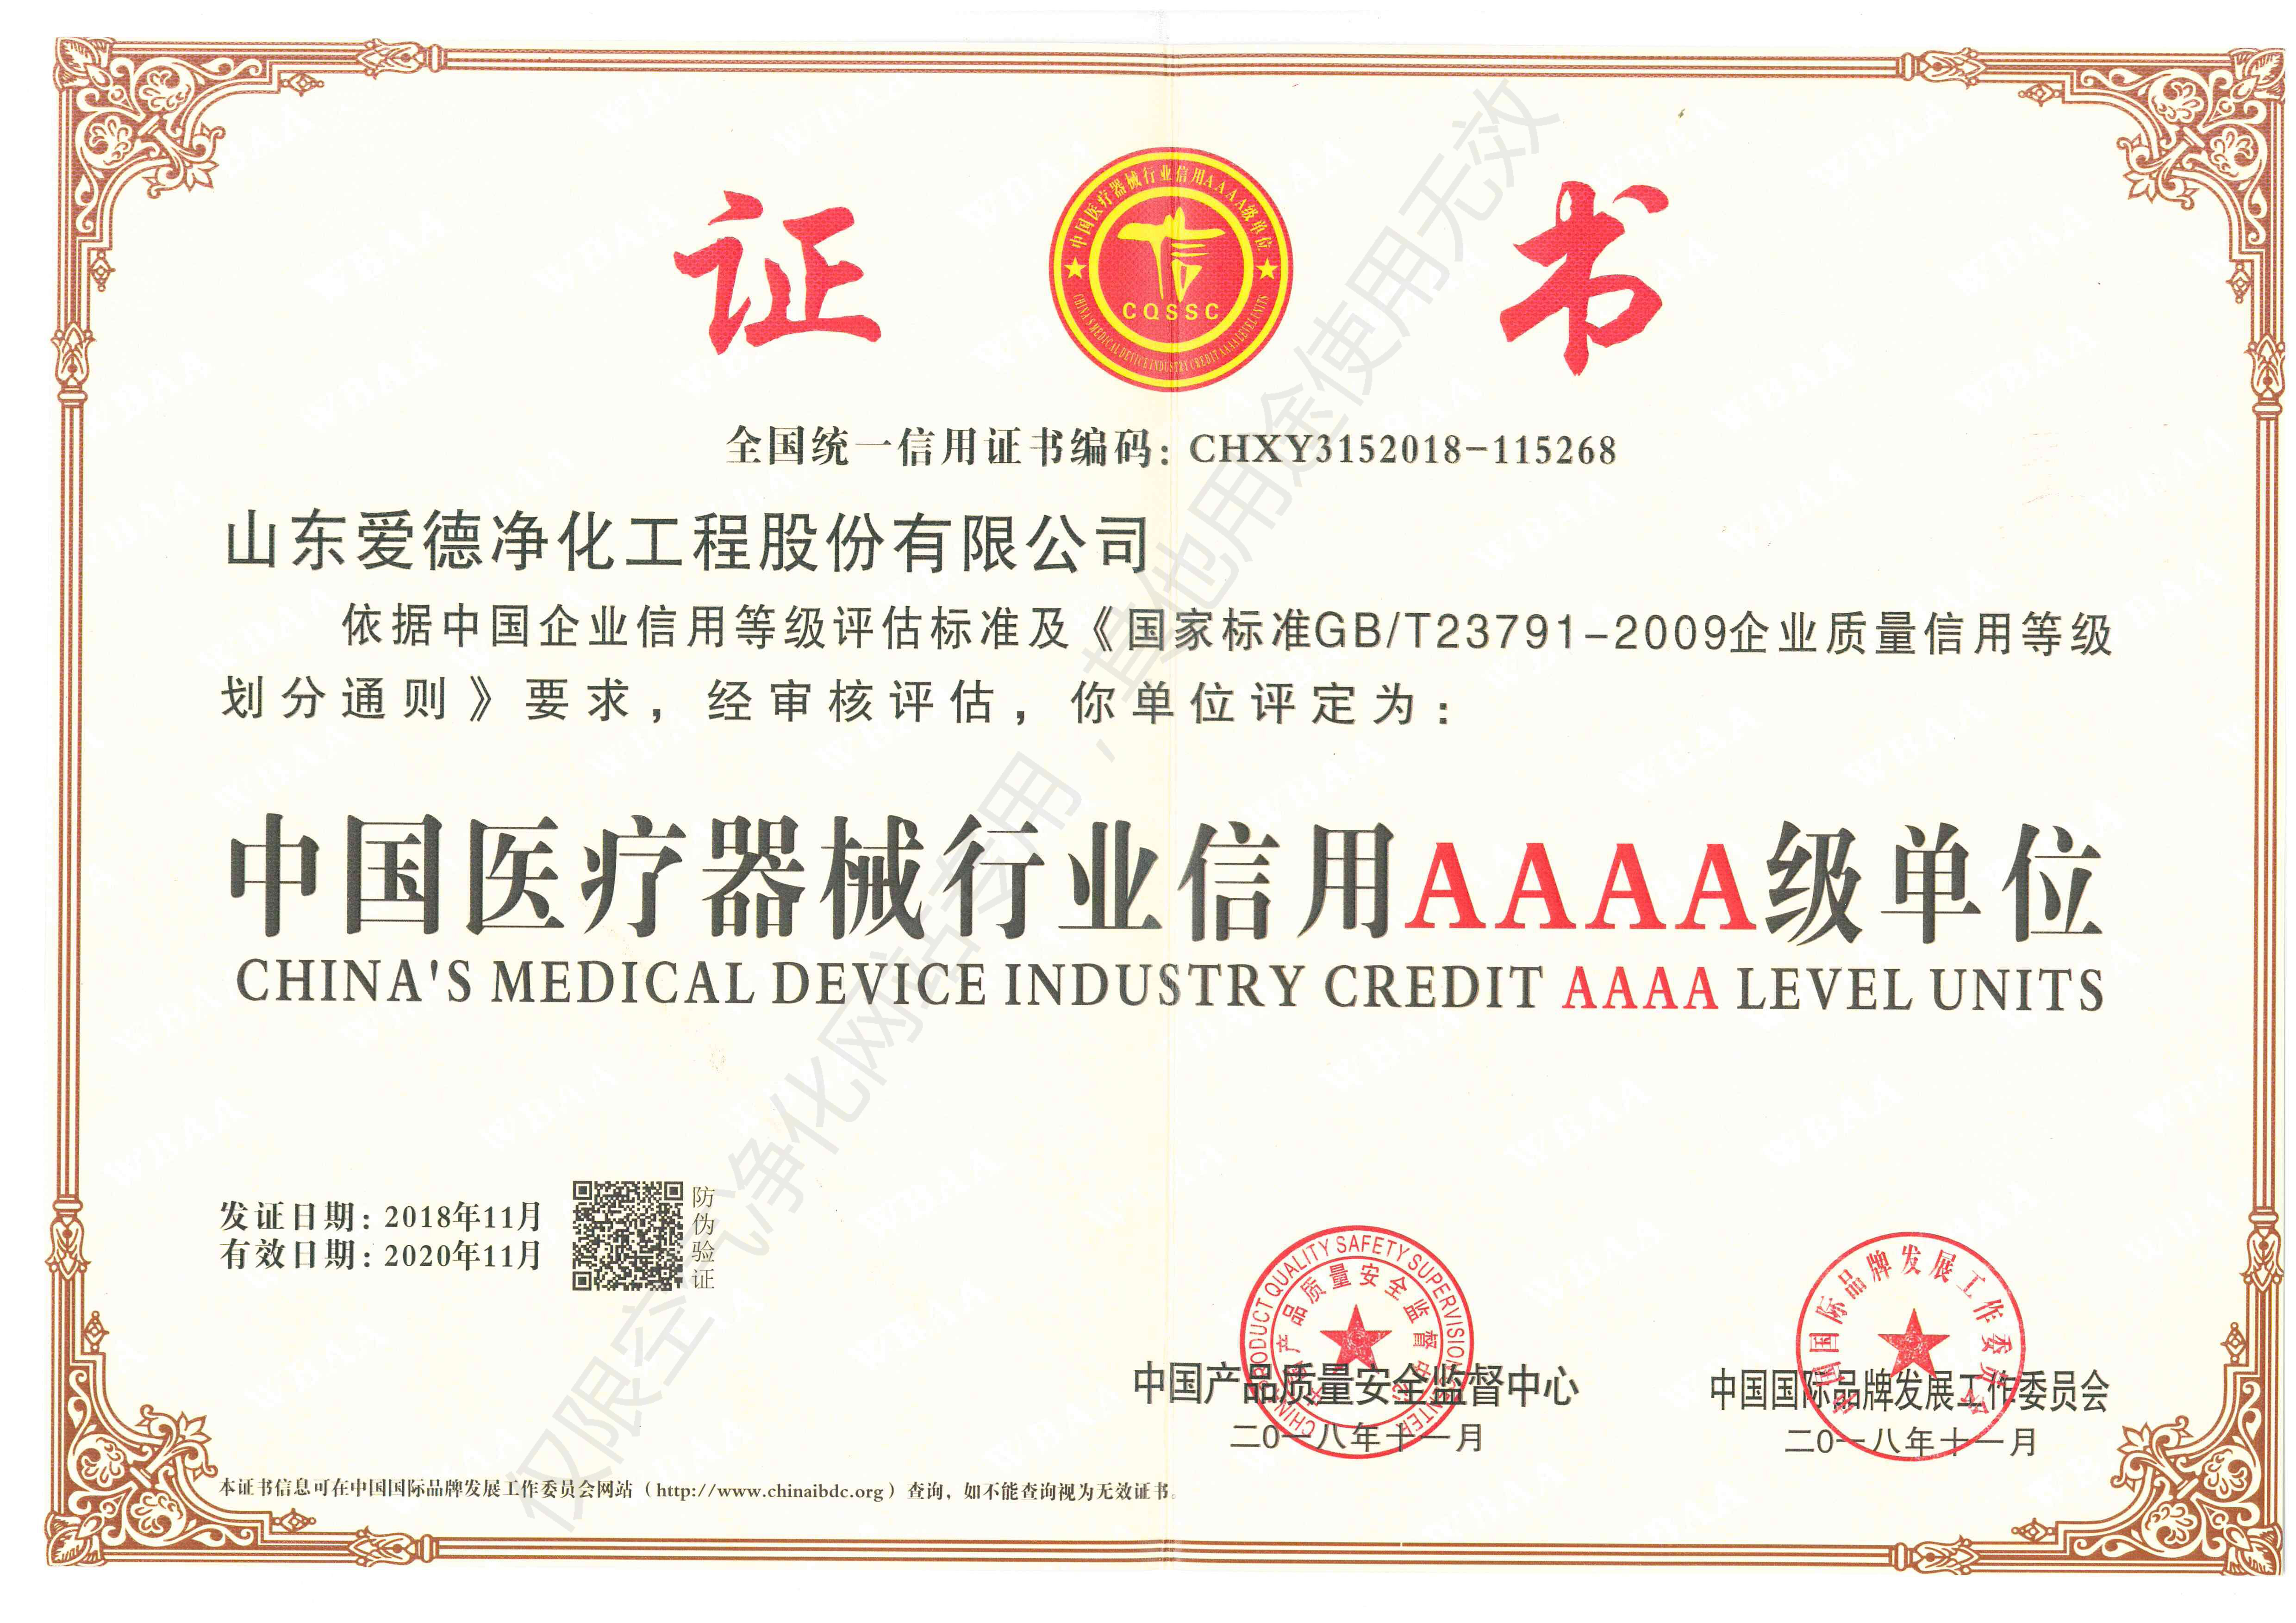 中国医疗器械行业信用AAAA级单位